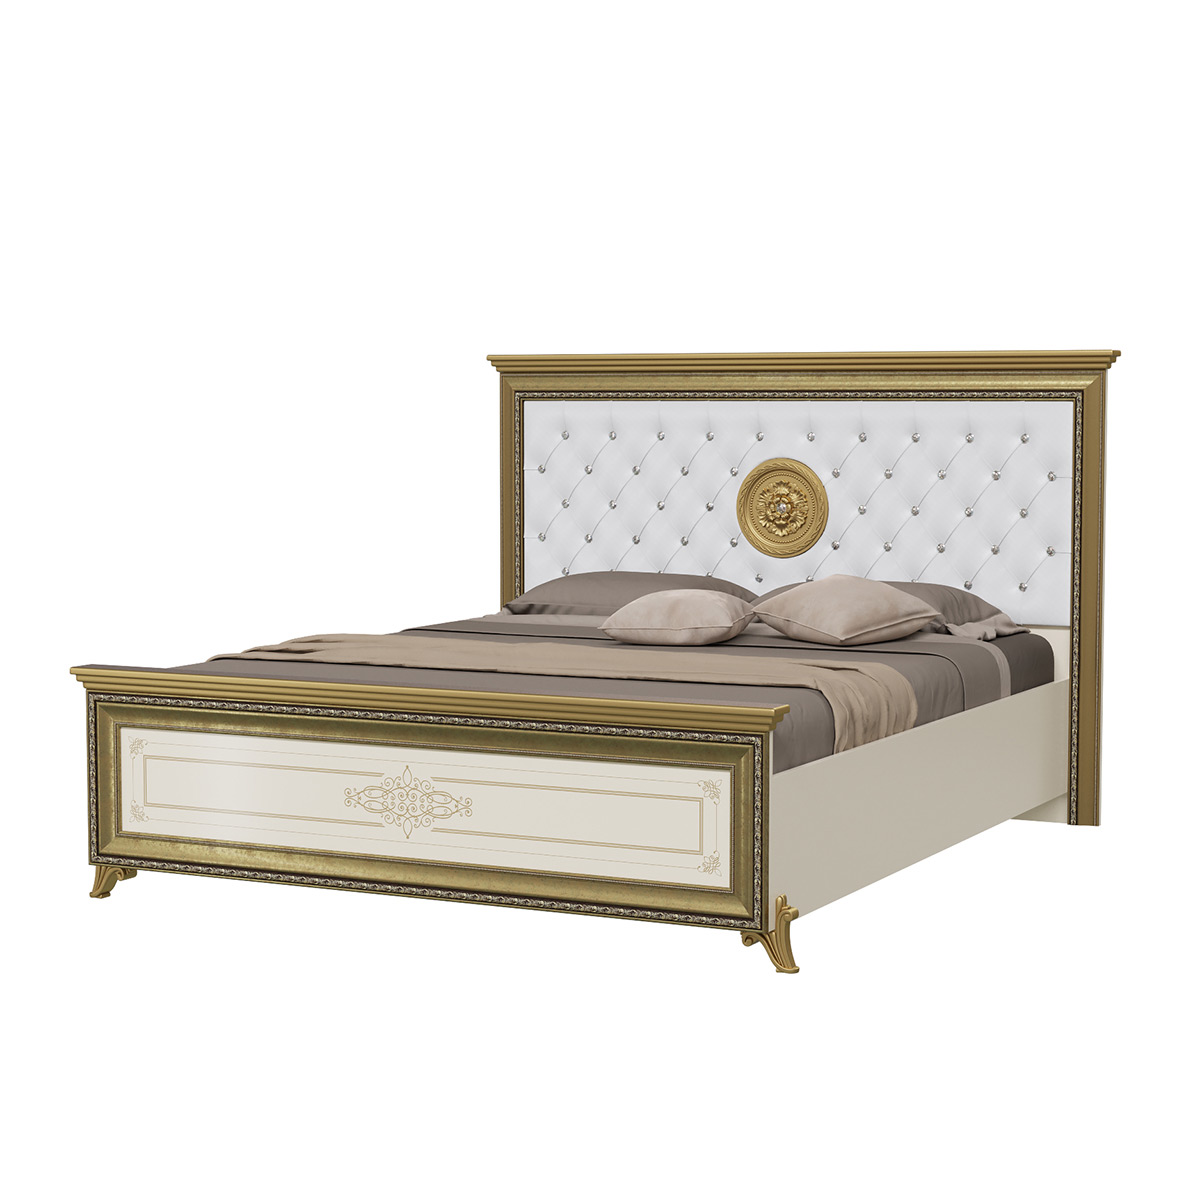 фото Кровать мэри версаль св-03мибк+орт слоновая кость, 185х212х127 см мэри-мебель